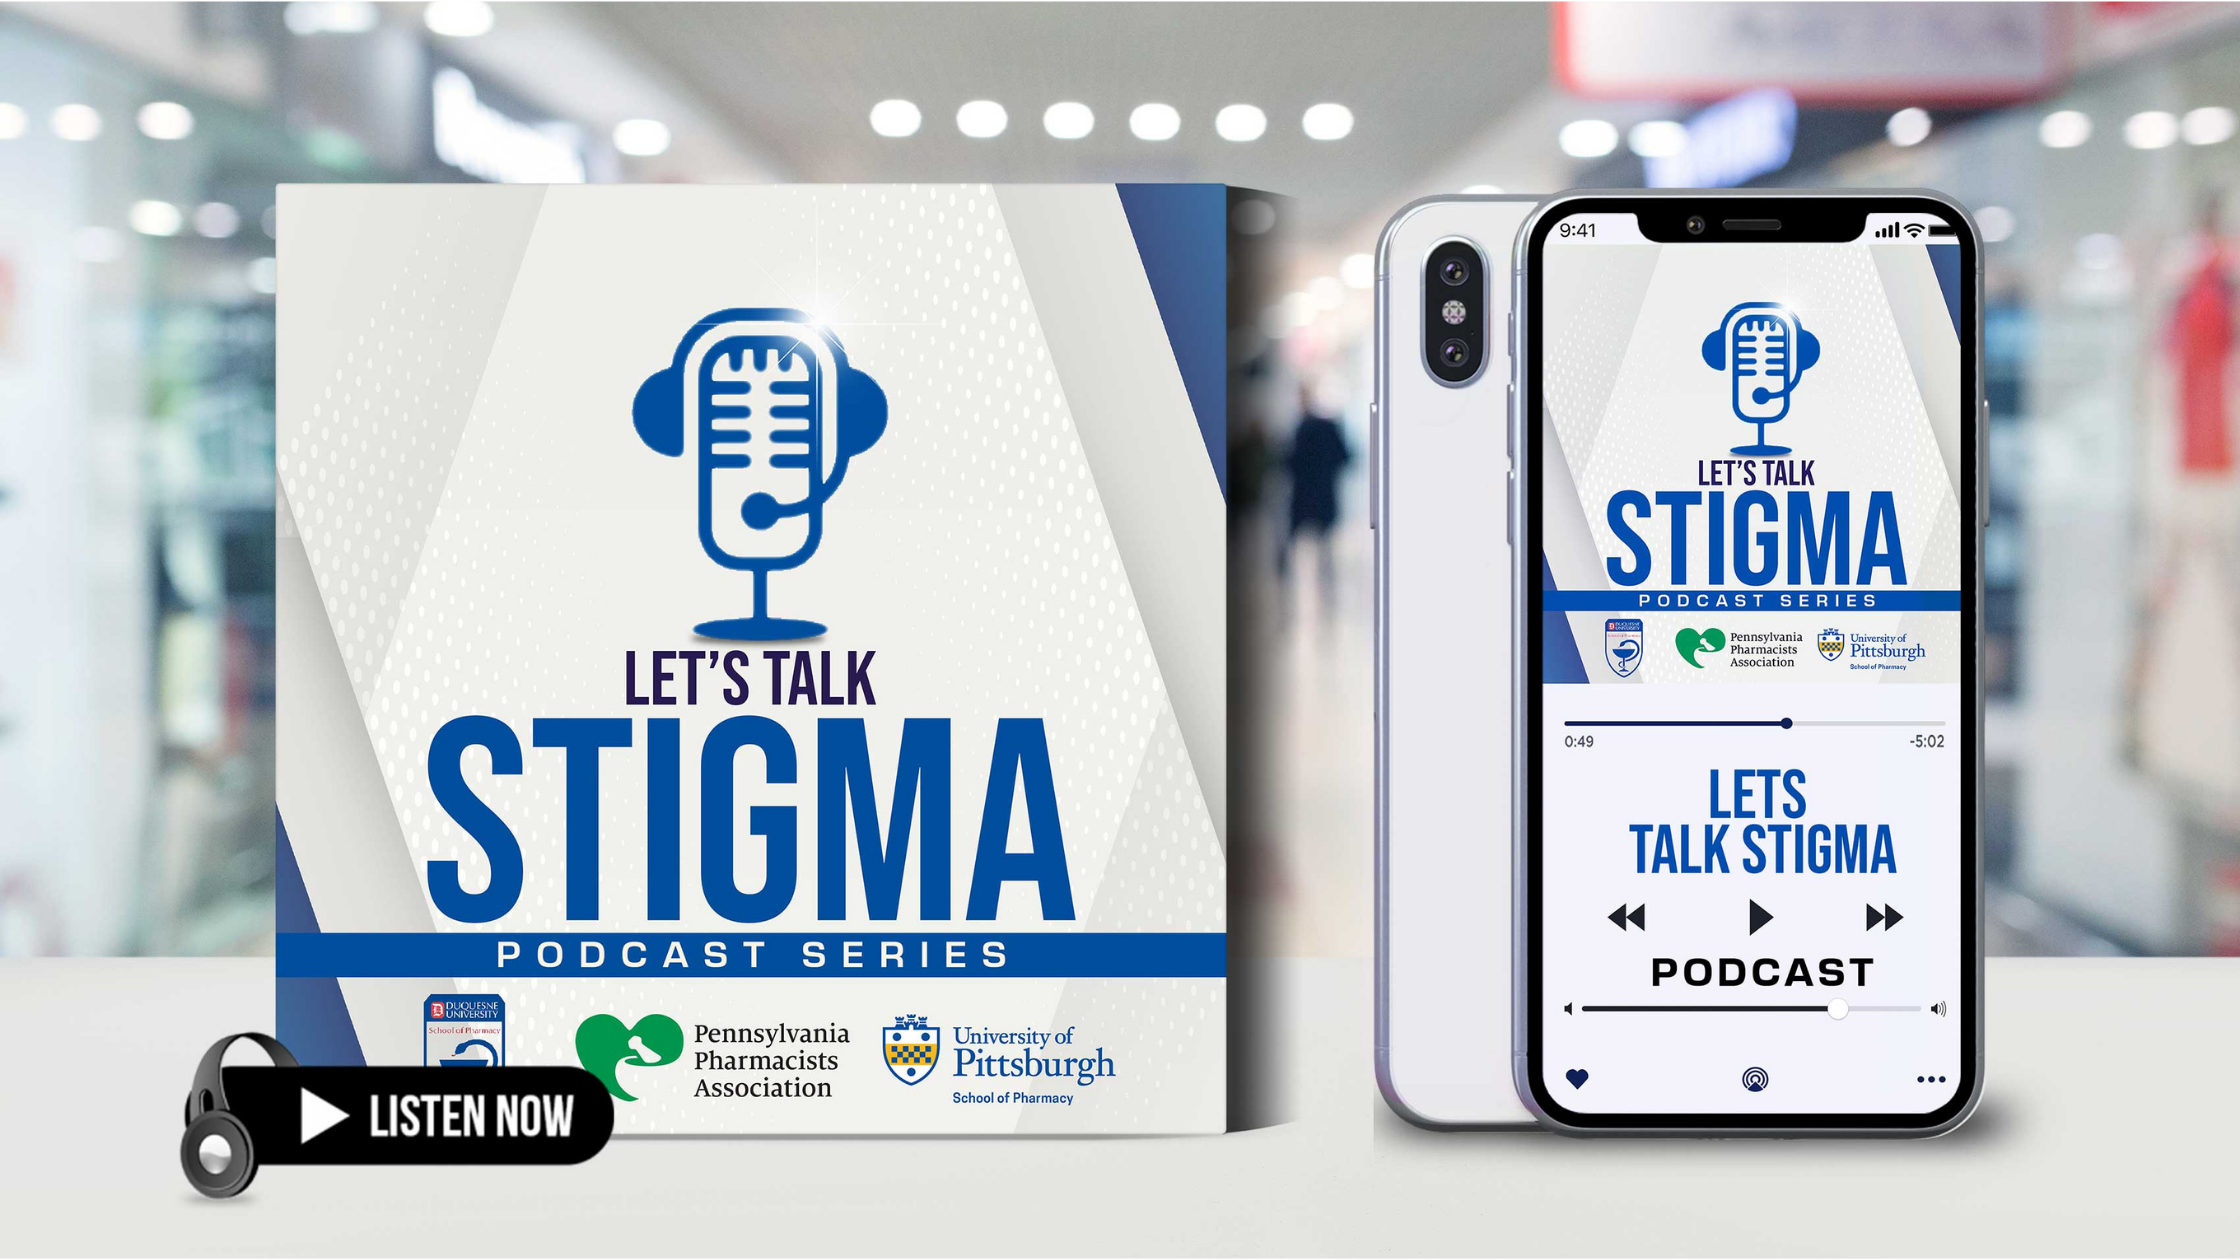 Let's talk stigma